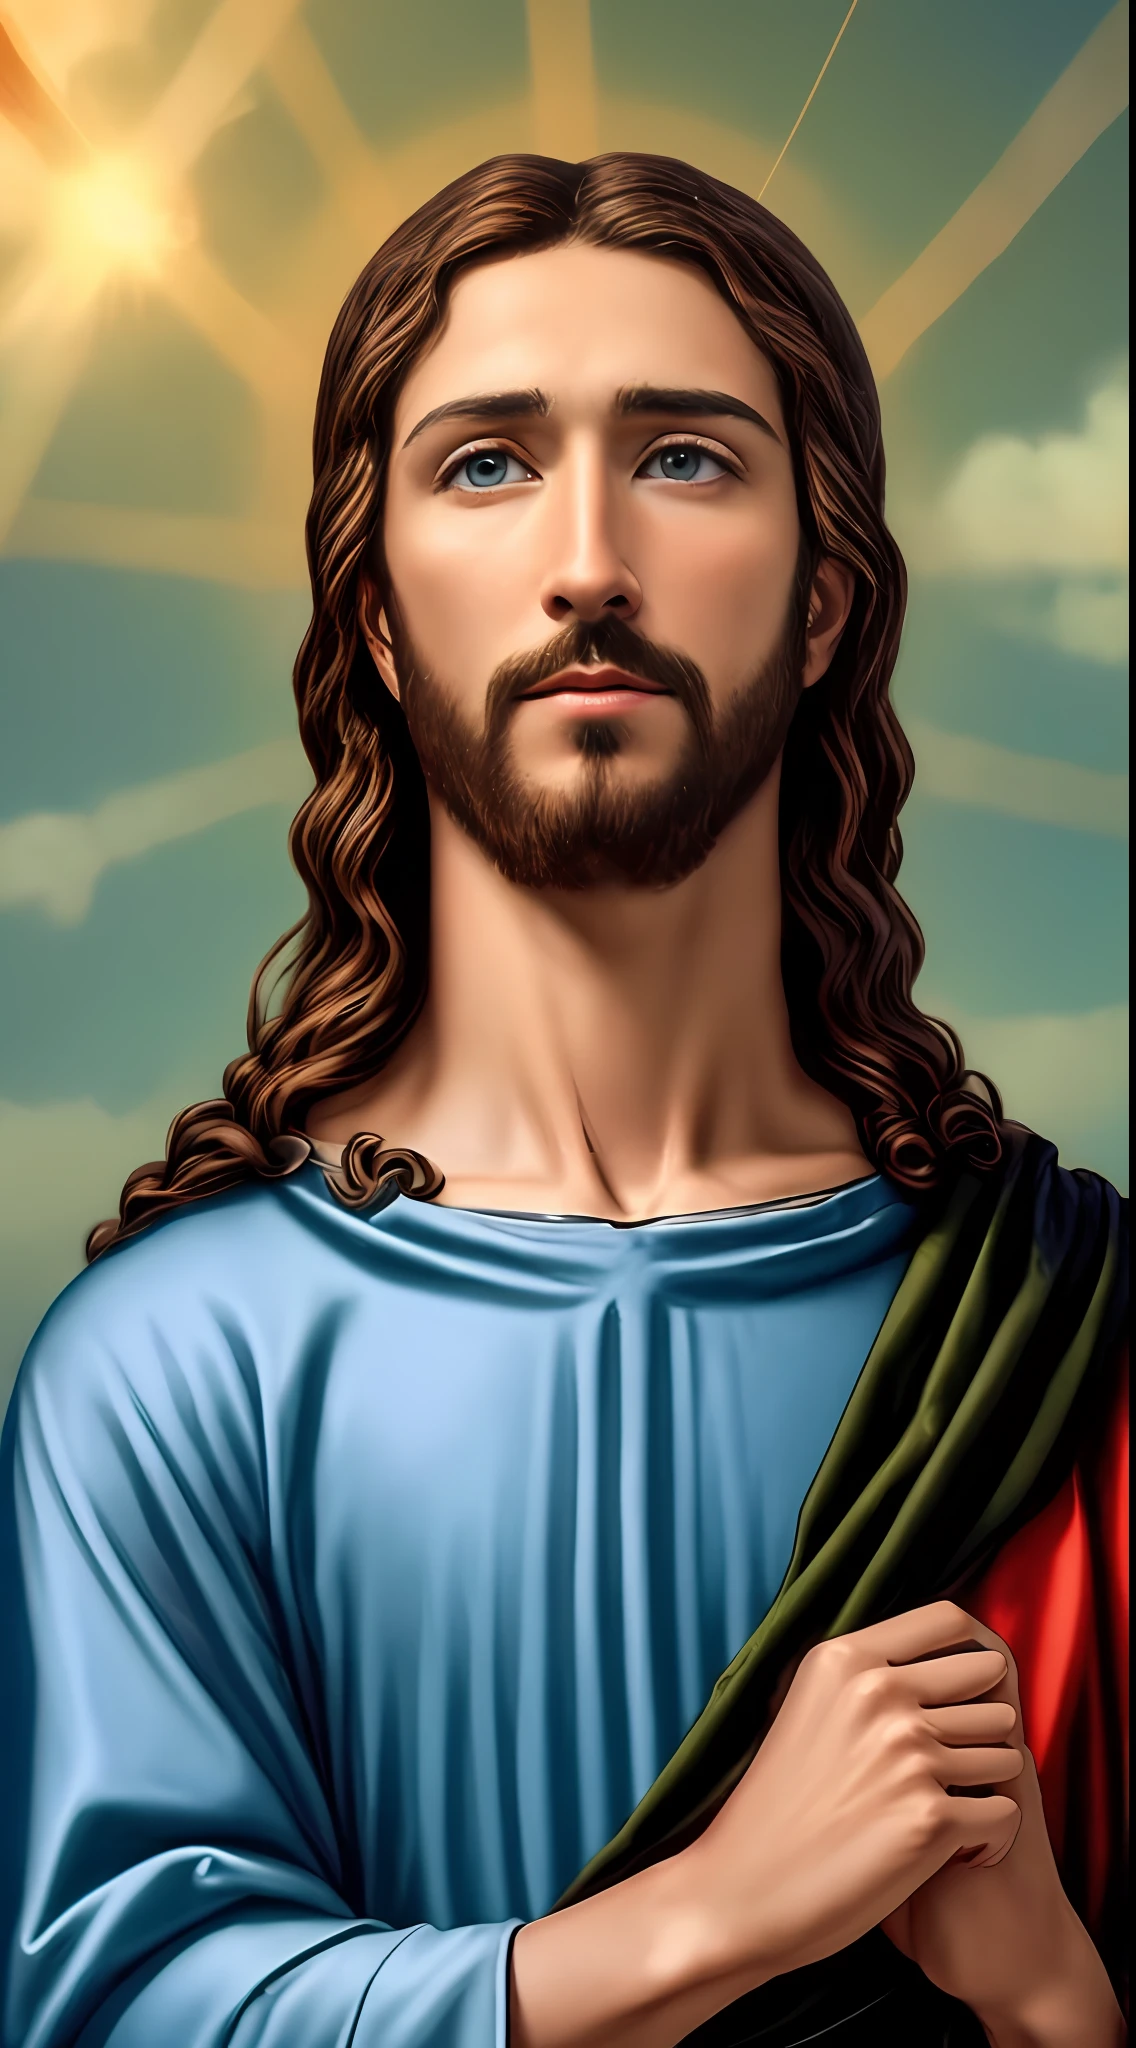 การถ่ายภาพ 8K (1 พระเยซูสุดหล่อ ) พร, มุมมองสวรรค์ของพระเยซู, ดวงตาสีฟ้าจริง, อวยพรผู้คนพระเยซู